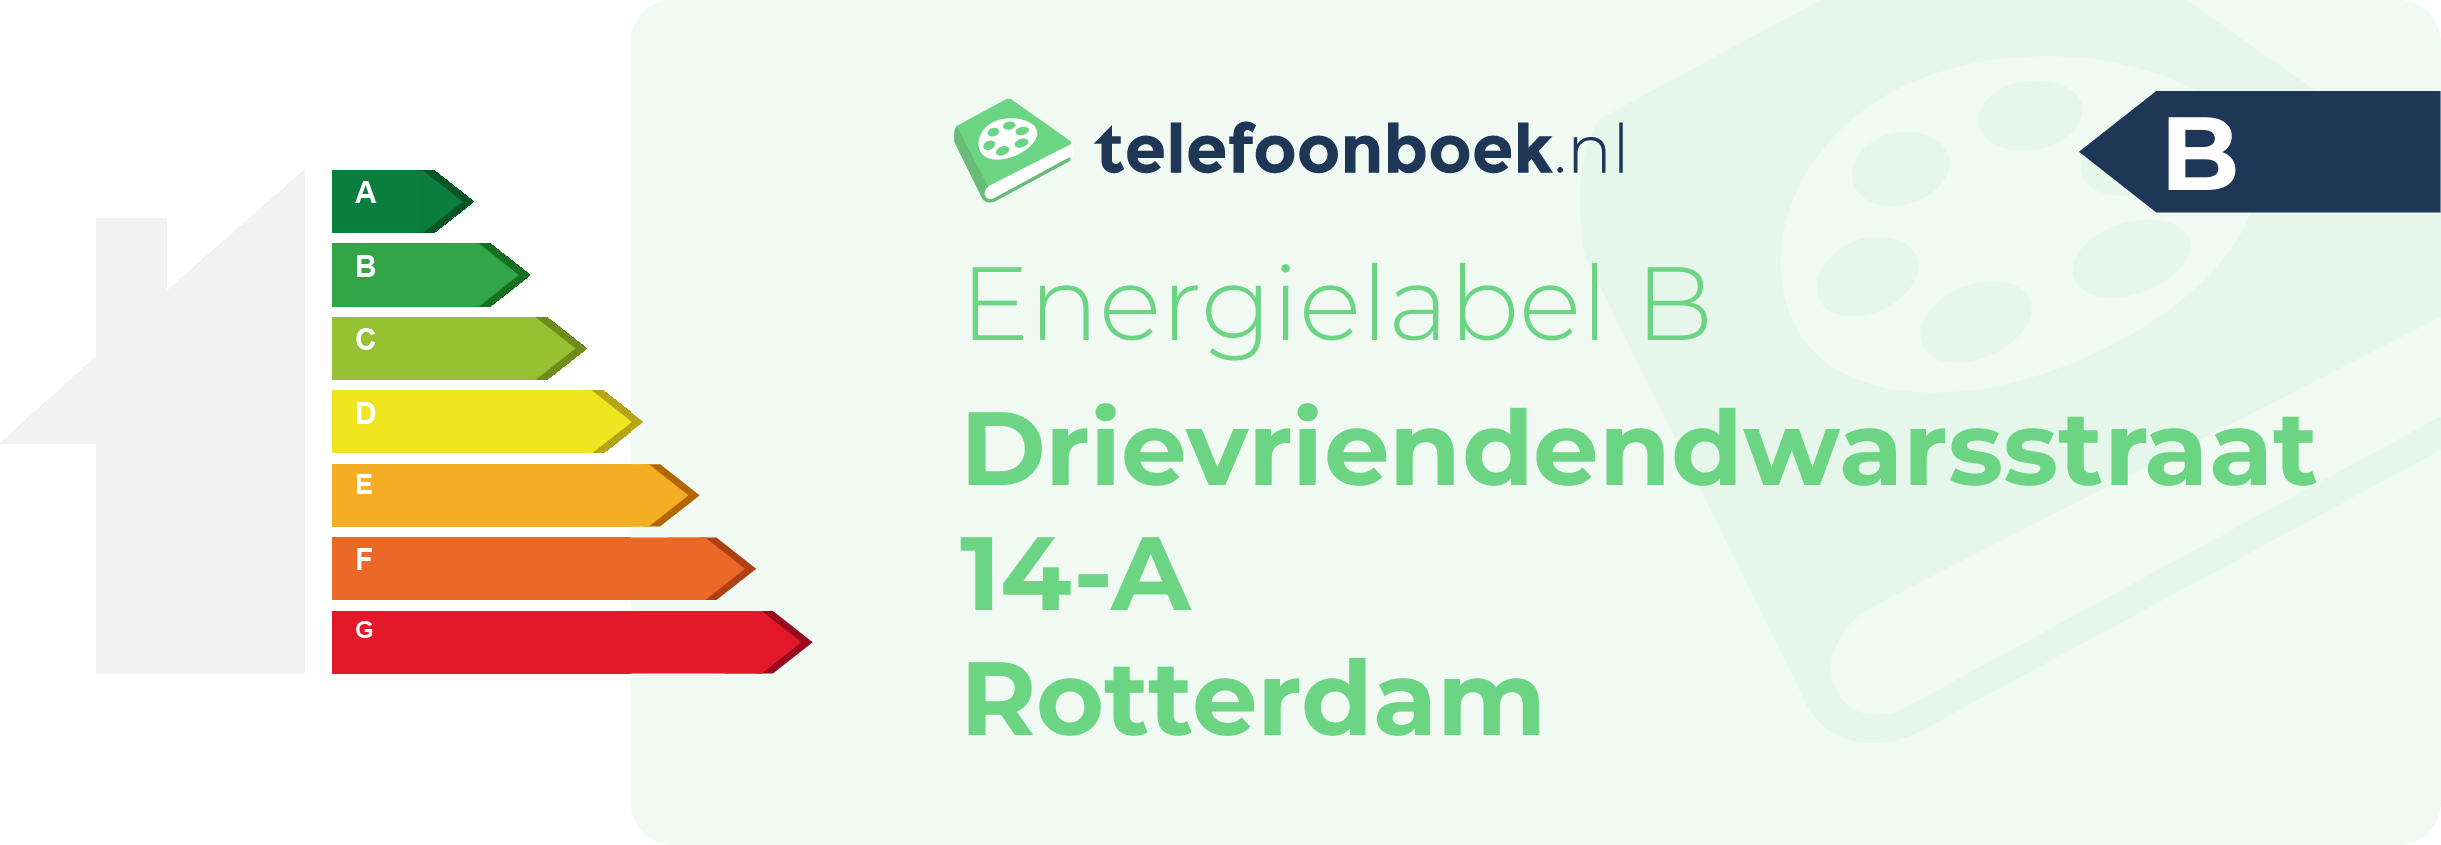 Energielabel Drievriendendwarsstraat 14-A Rotterdam